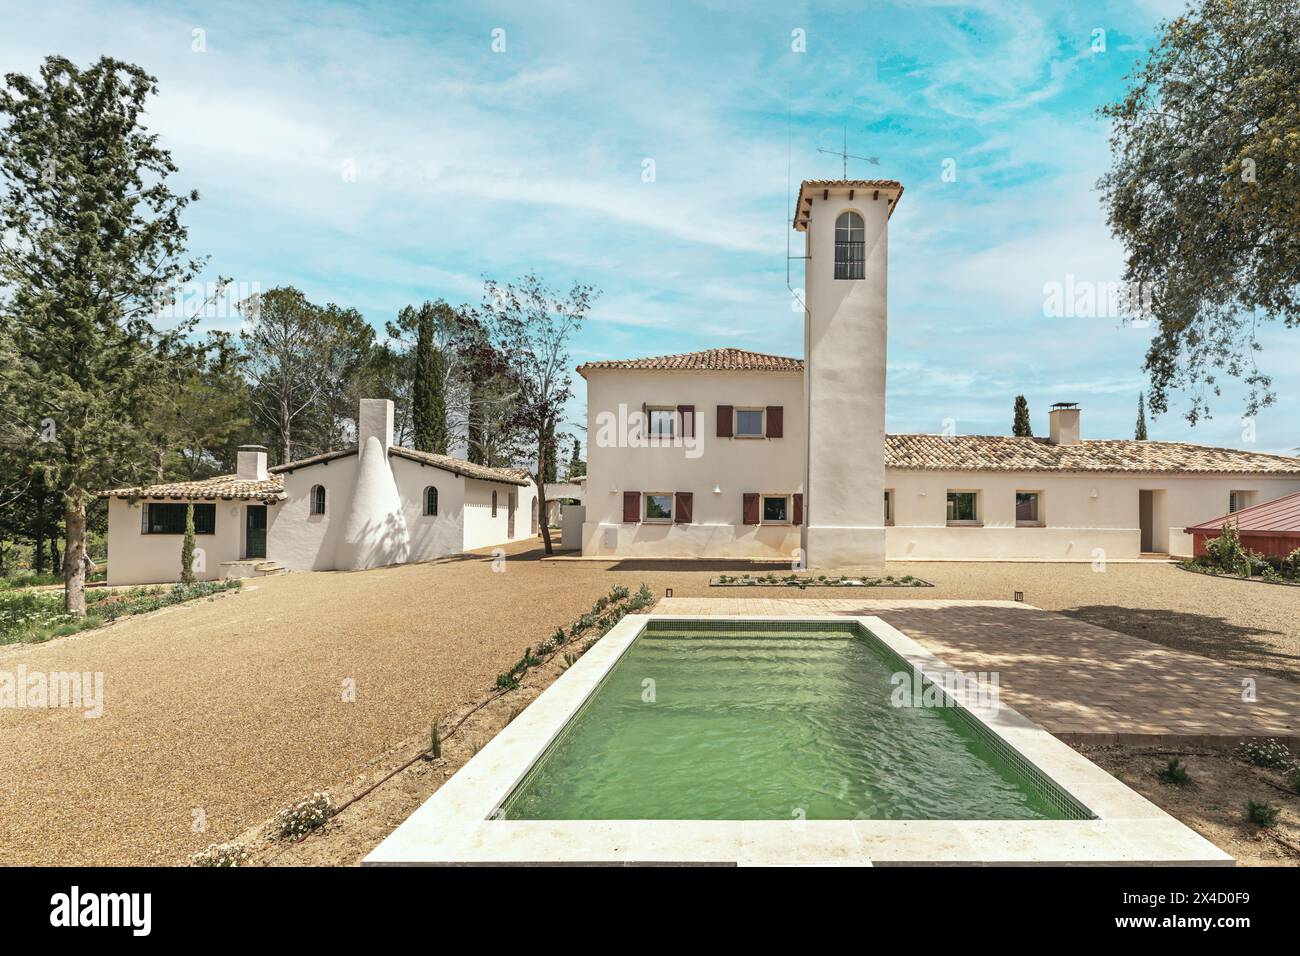 Una casa di campagna in stile andaluso, circondata da alberi frondosi e con una piscina di piastrelle verdi Foto Stock